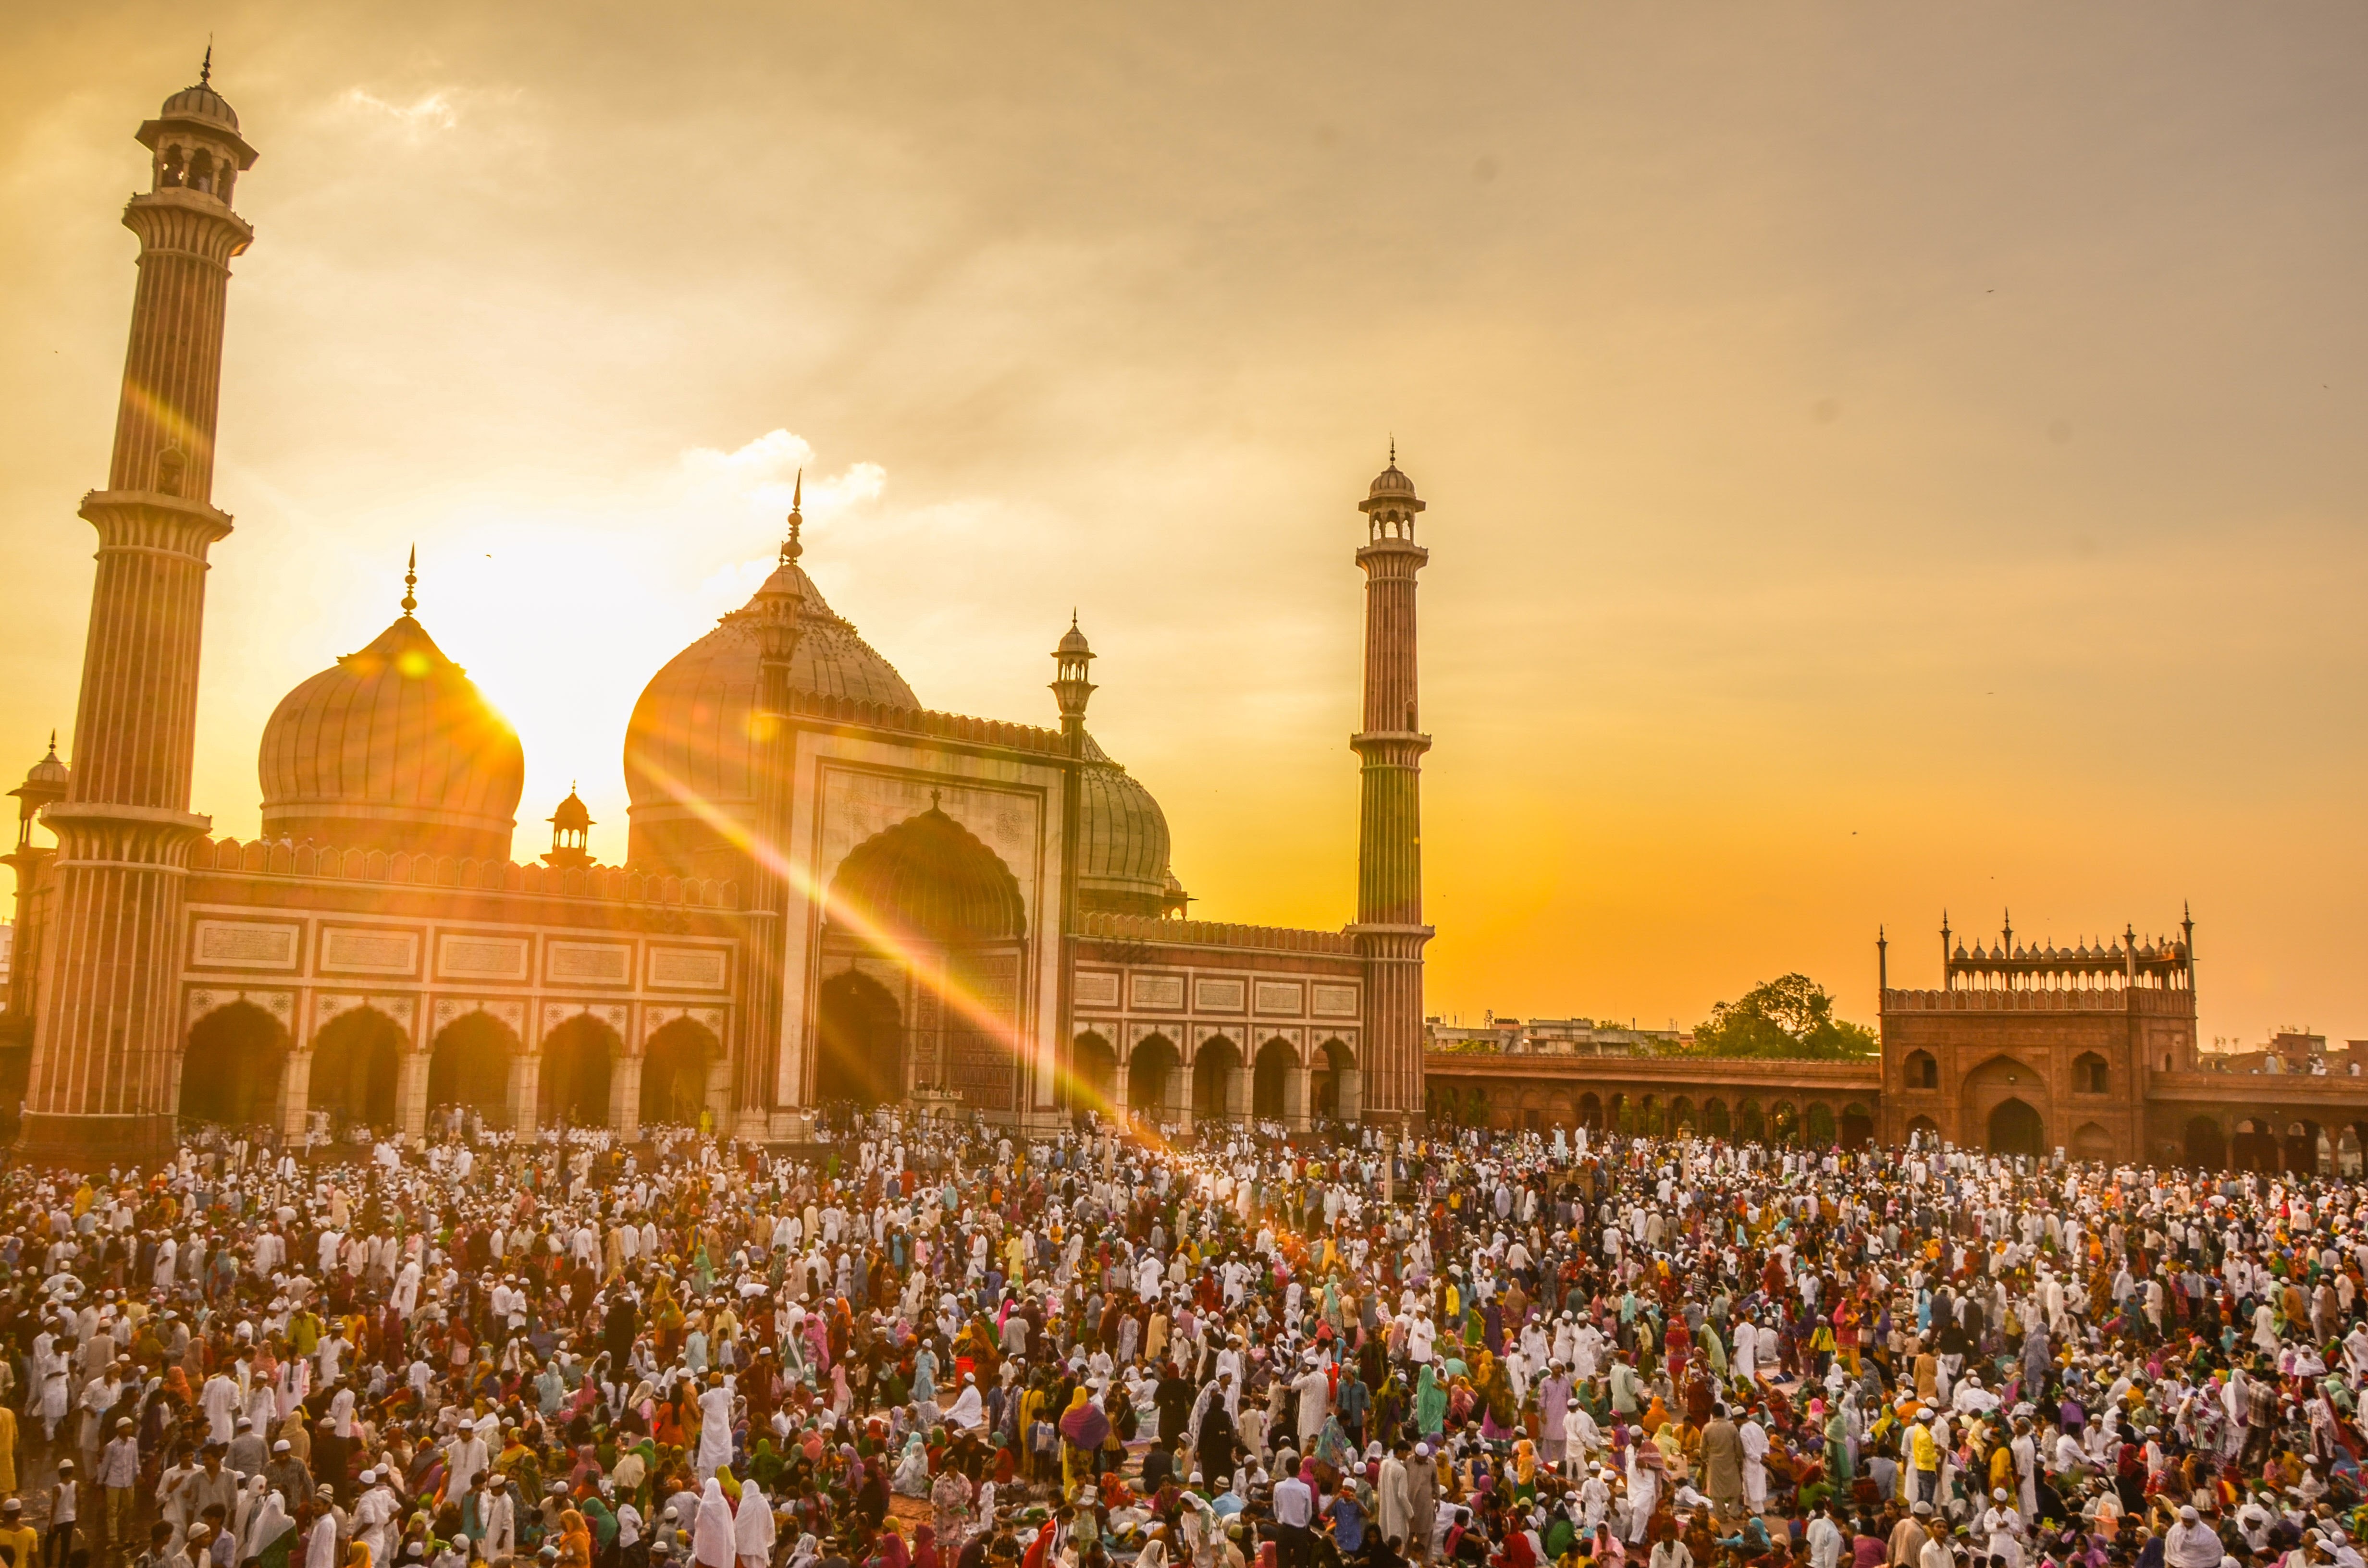 La Gran Mezquita Jama Masjid en Delhi, viaje a la India